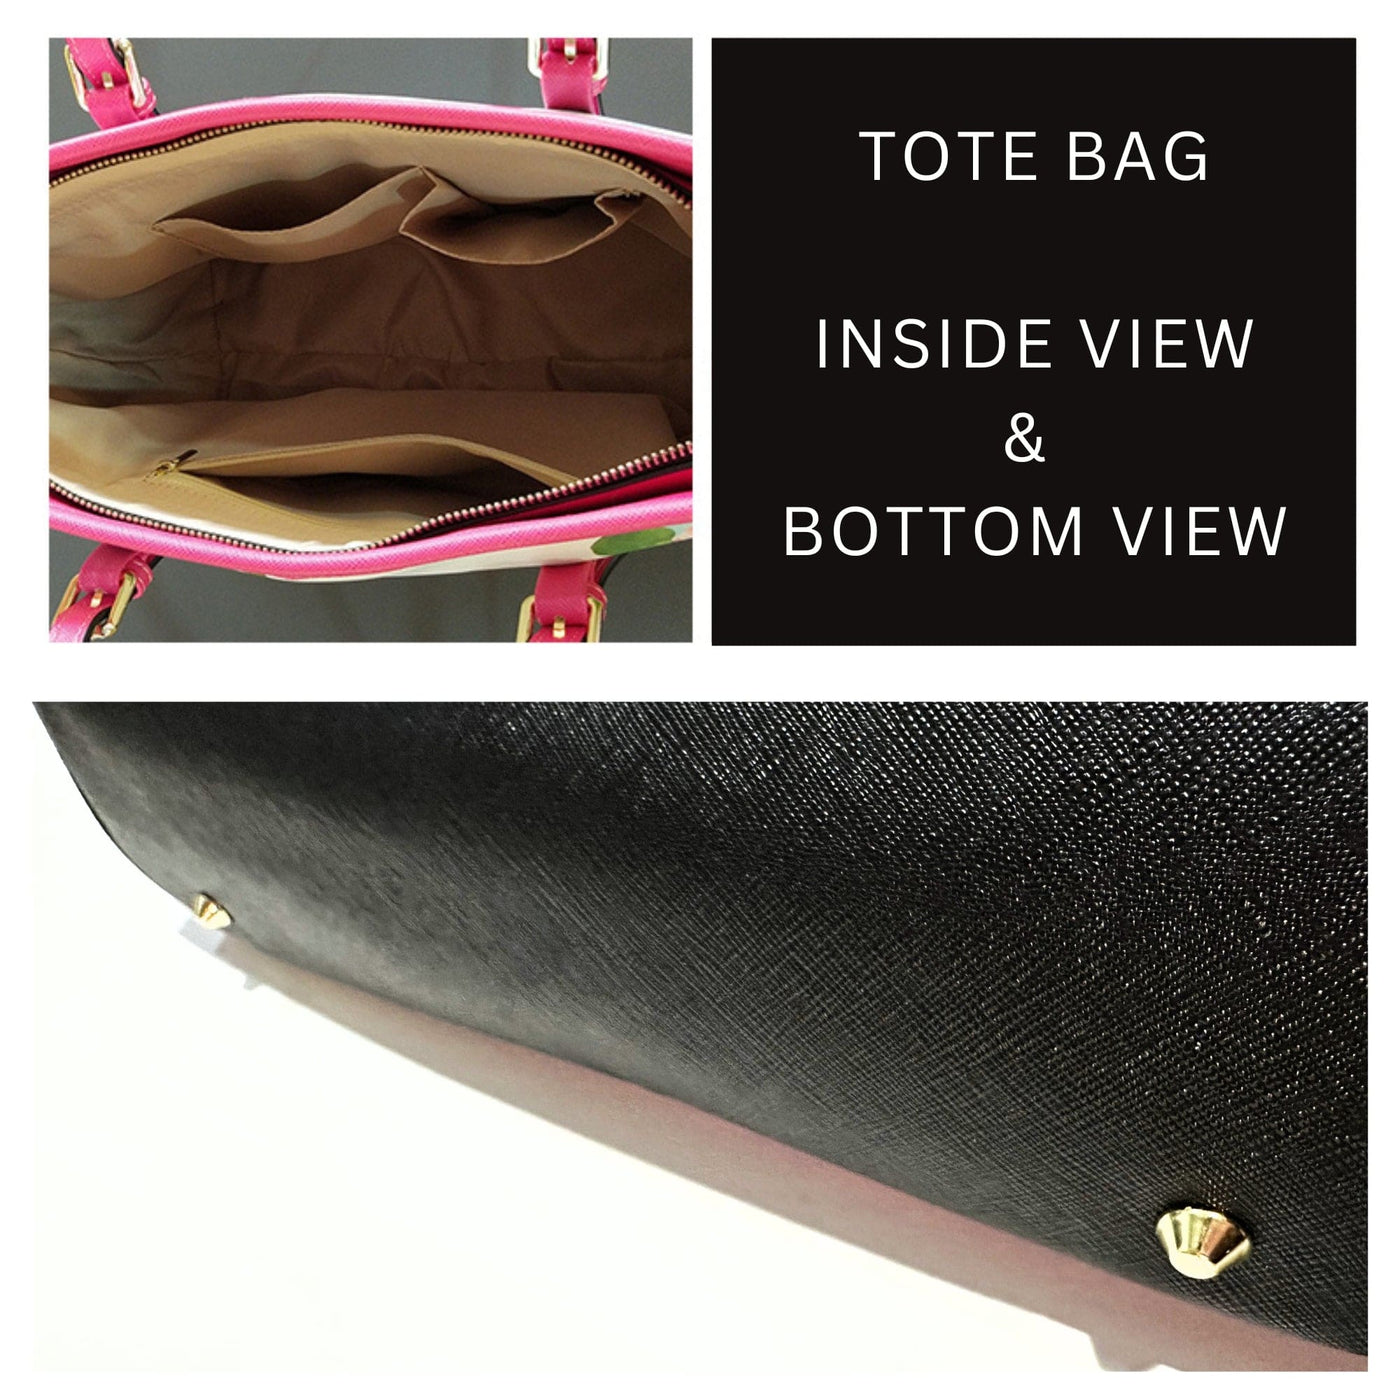 Large Leather Tote Shoulder Bag - Purple Paint Splatter Handbag - Bags | Leather